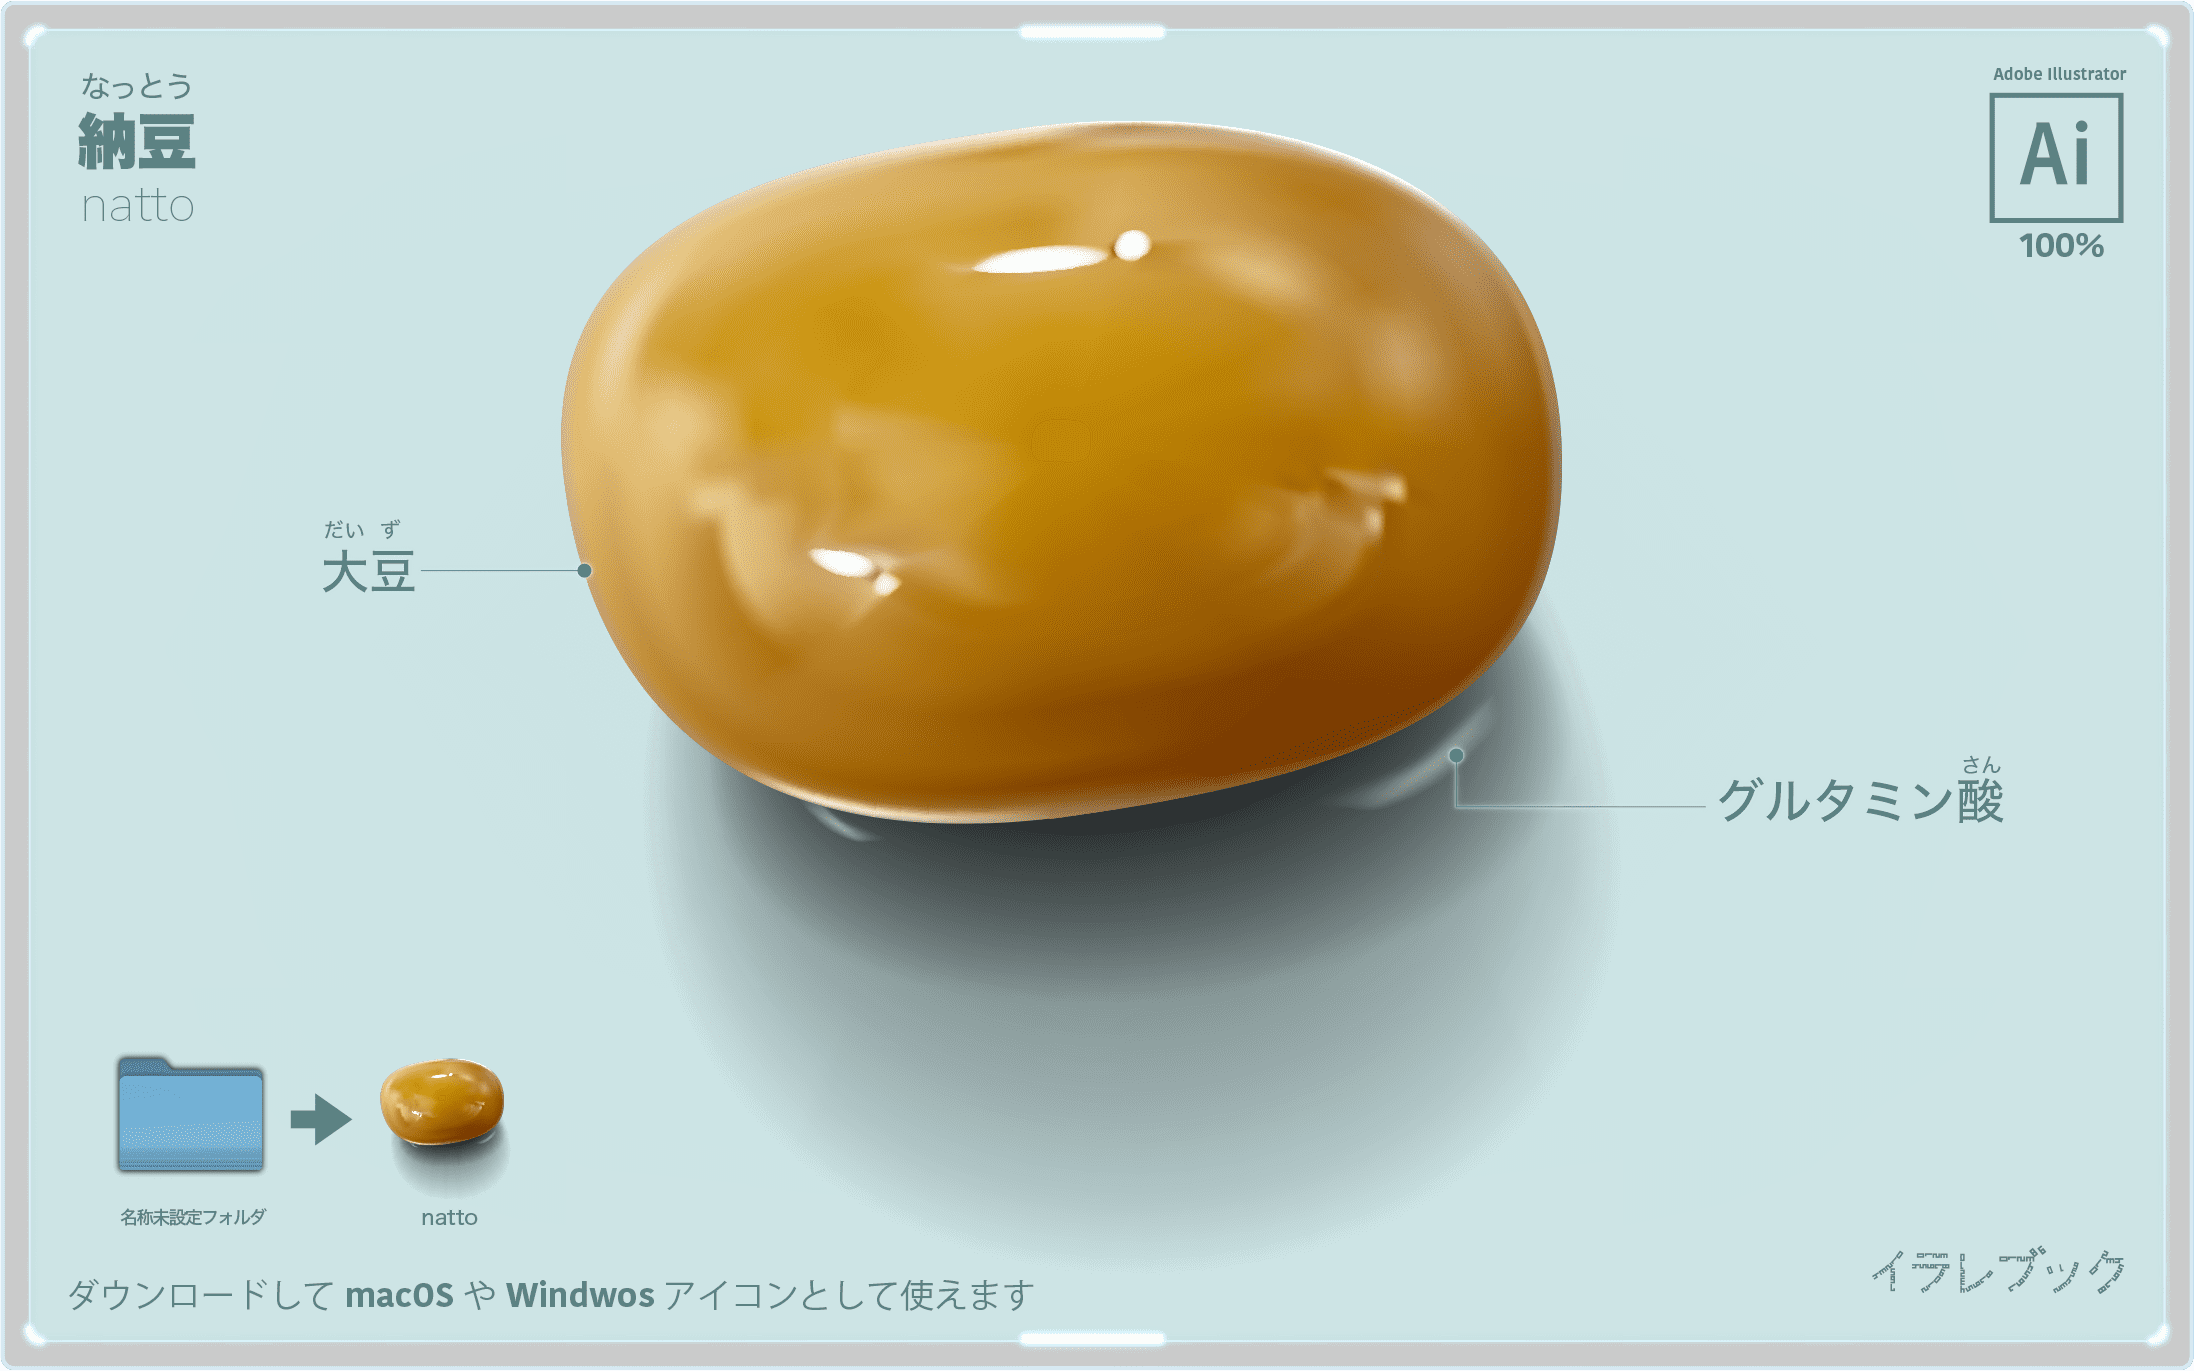 納豆 イラスト イラレでリアルより美しく トッピング診断 納豆の作り方 納豆菌 栄養